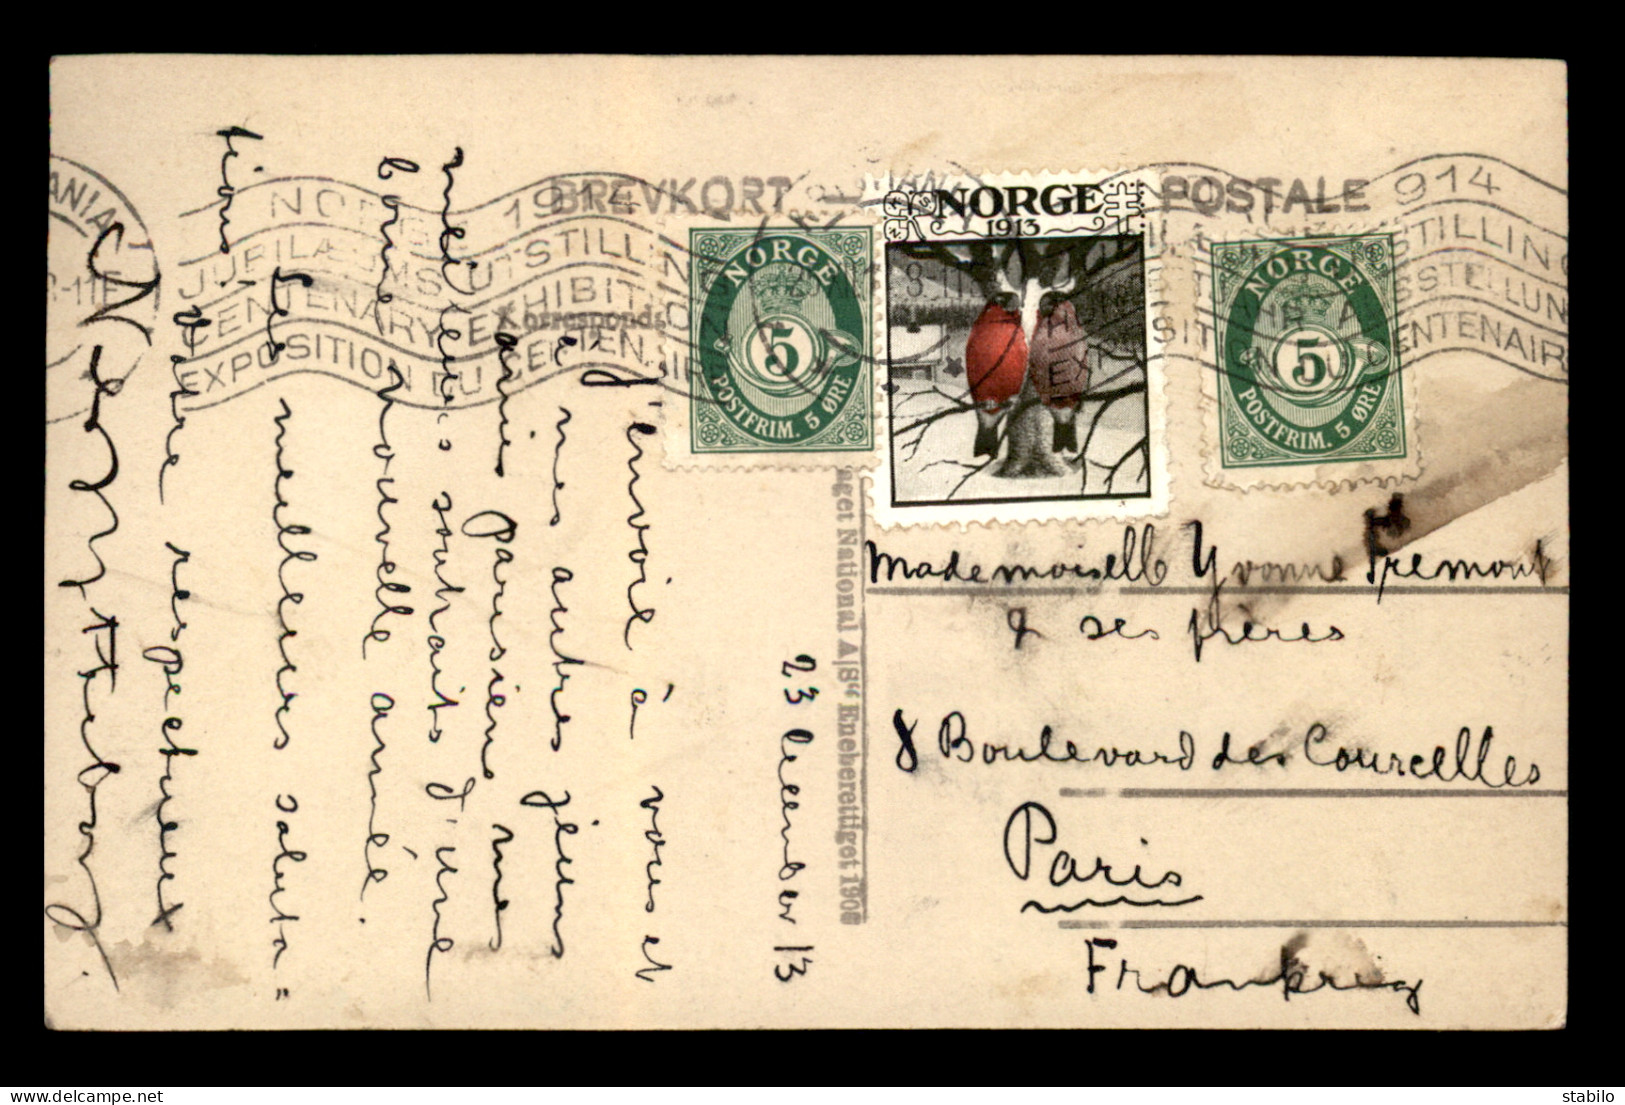 NORVEGE - OBLITERATION EXPOSITION DU CENTENAIRE 1914 DU 23.12.1913 AVEC VIGNETTE NORGE 1913 SUR CARTE STEREO - Cartas & Documentos